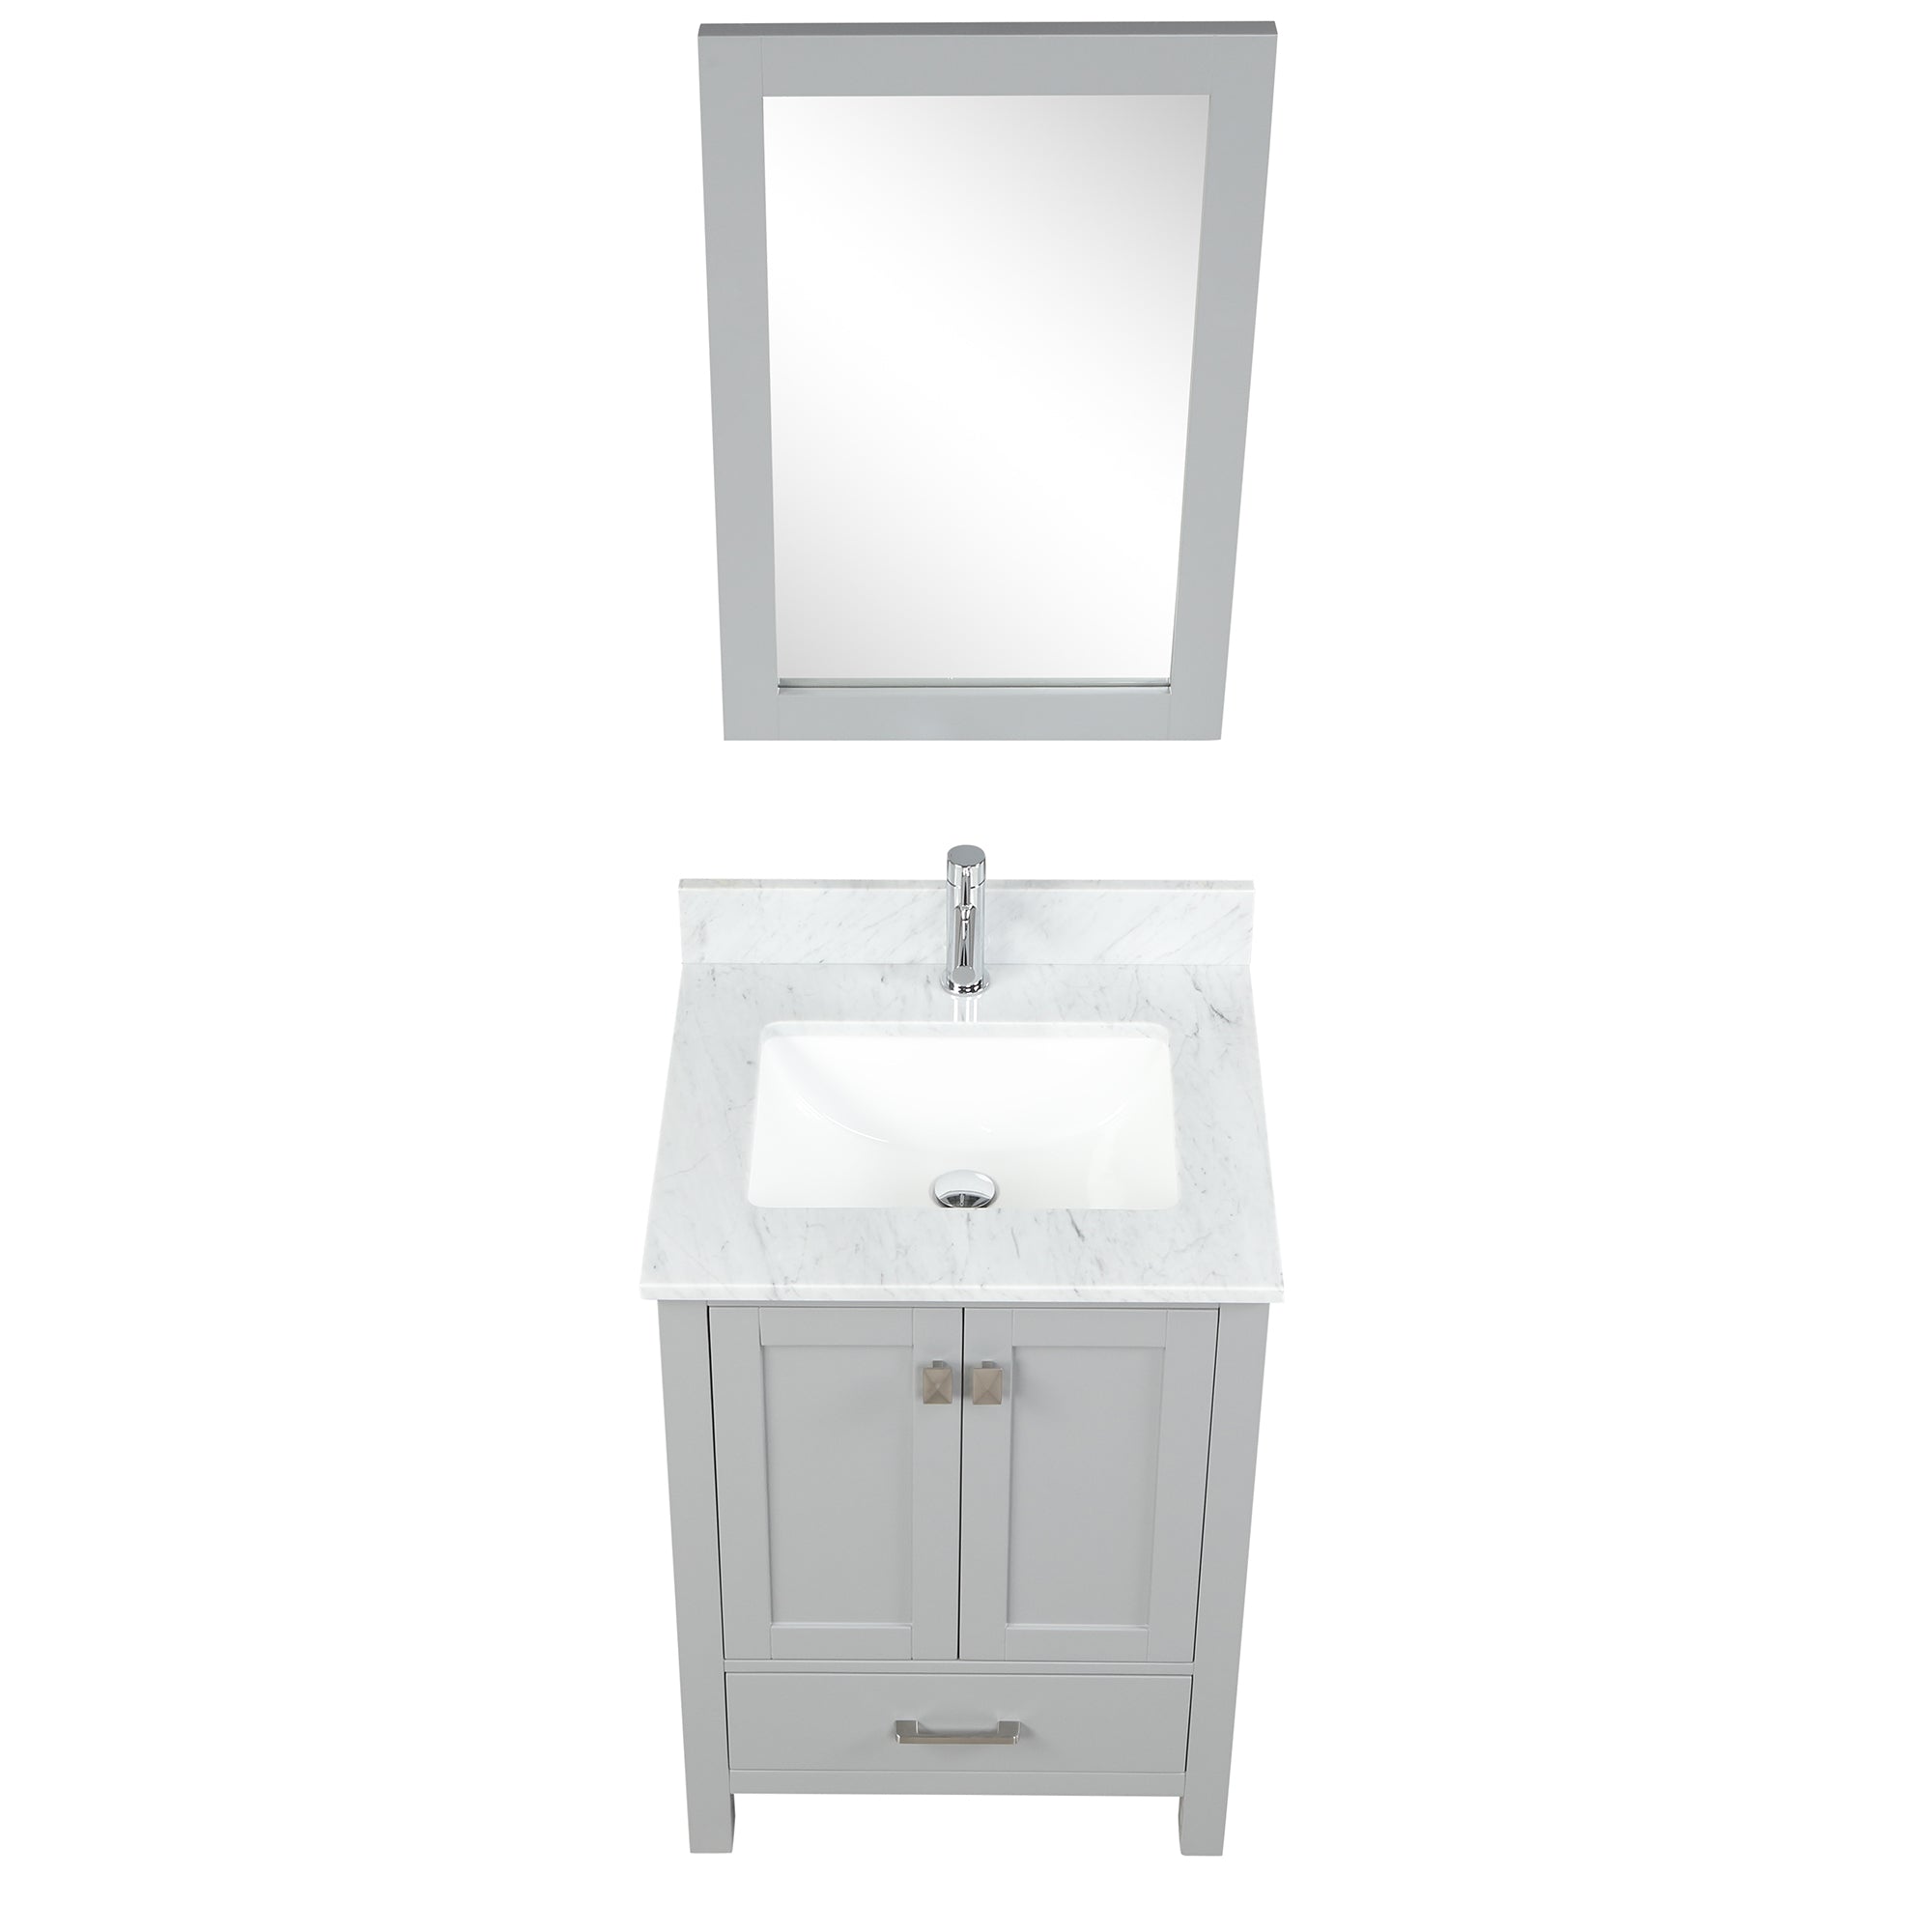 Geneva 24" Grey Bathroom Vanity with Marble Countertop - Contemporary Bathroom Vanity